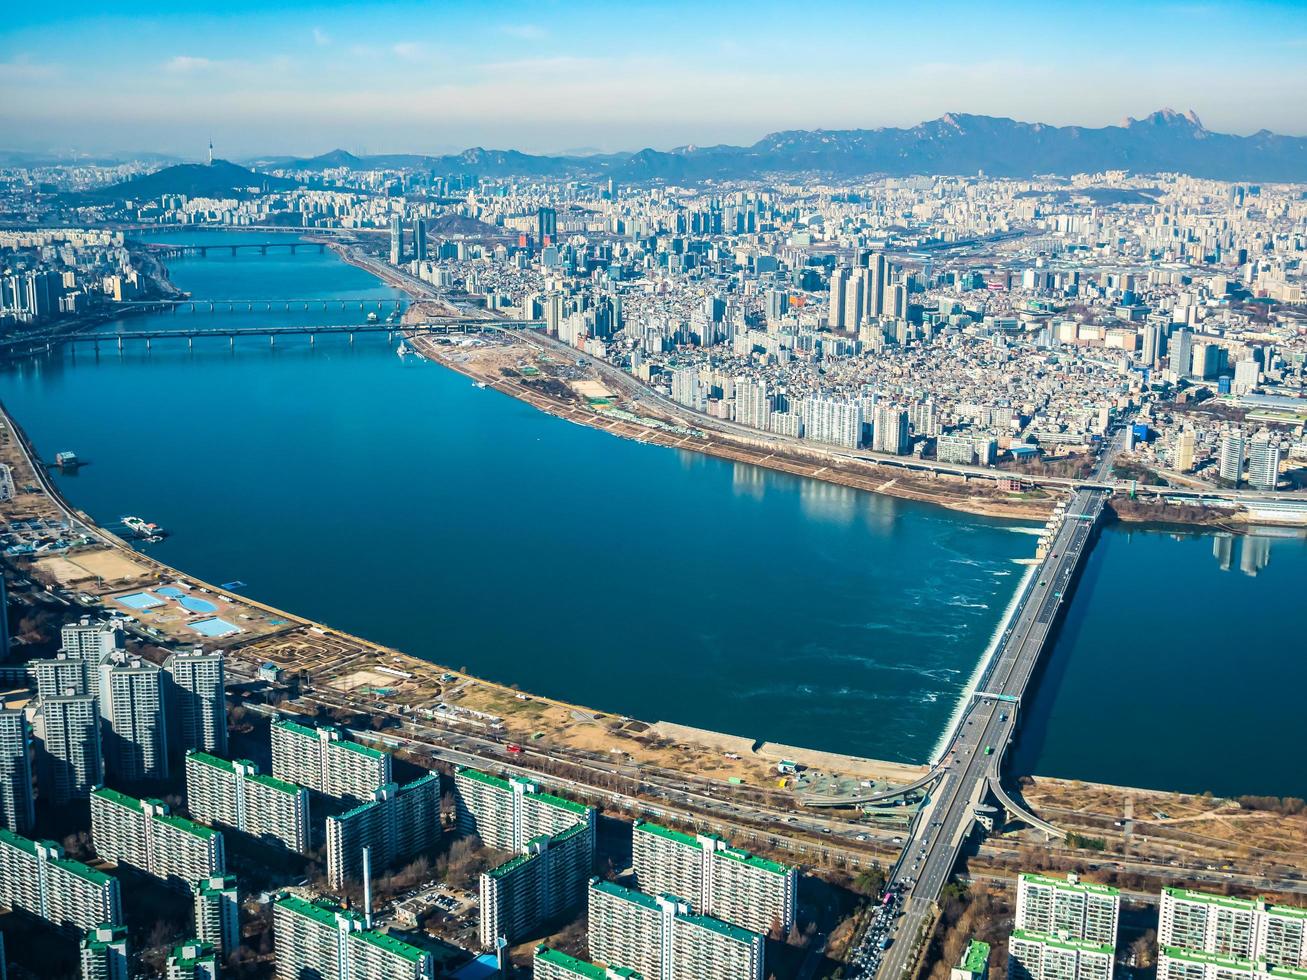 luchtfoto van seoul city, zuid-korea foto